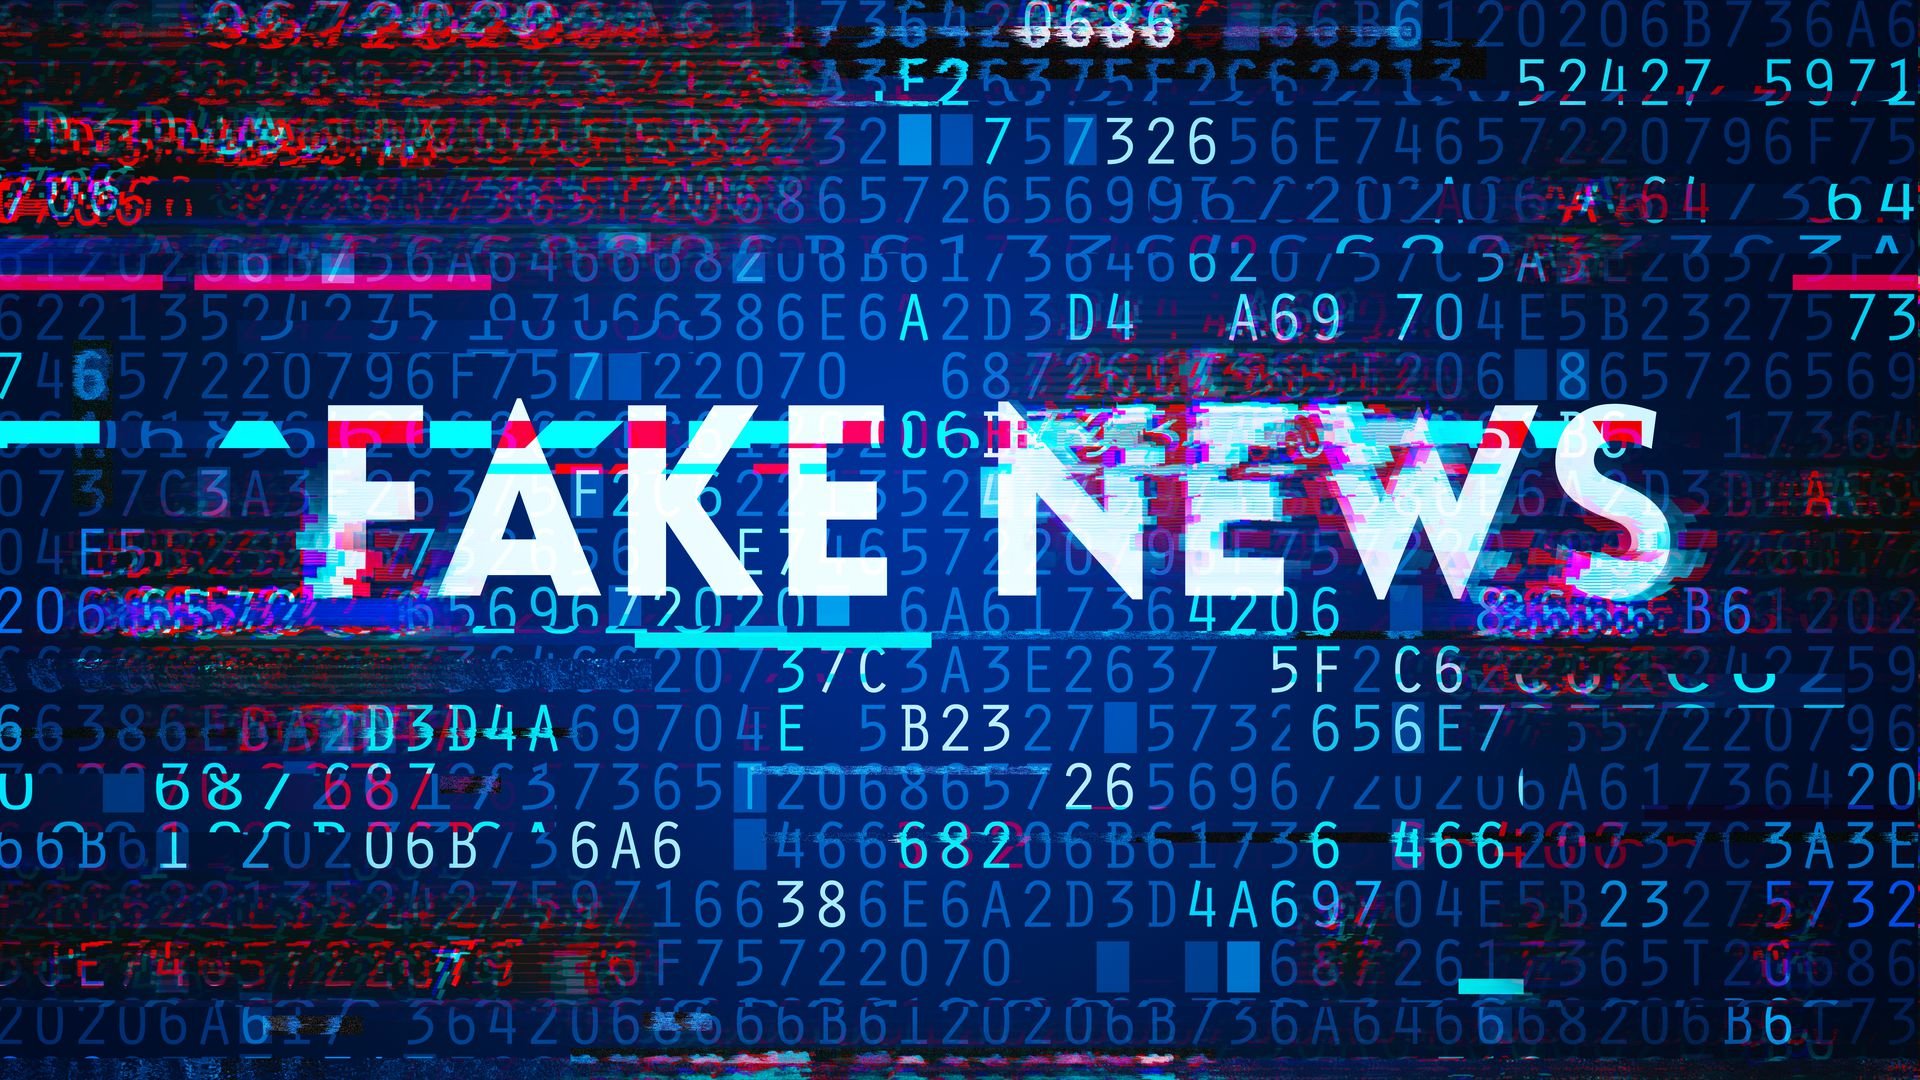  Primul site închis de autorități pentru răspândire de fake news